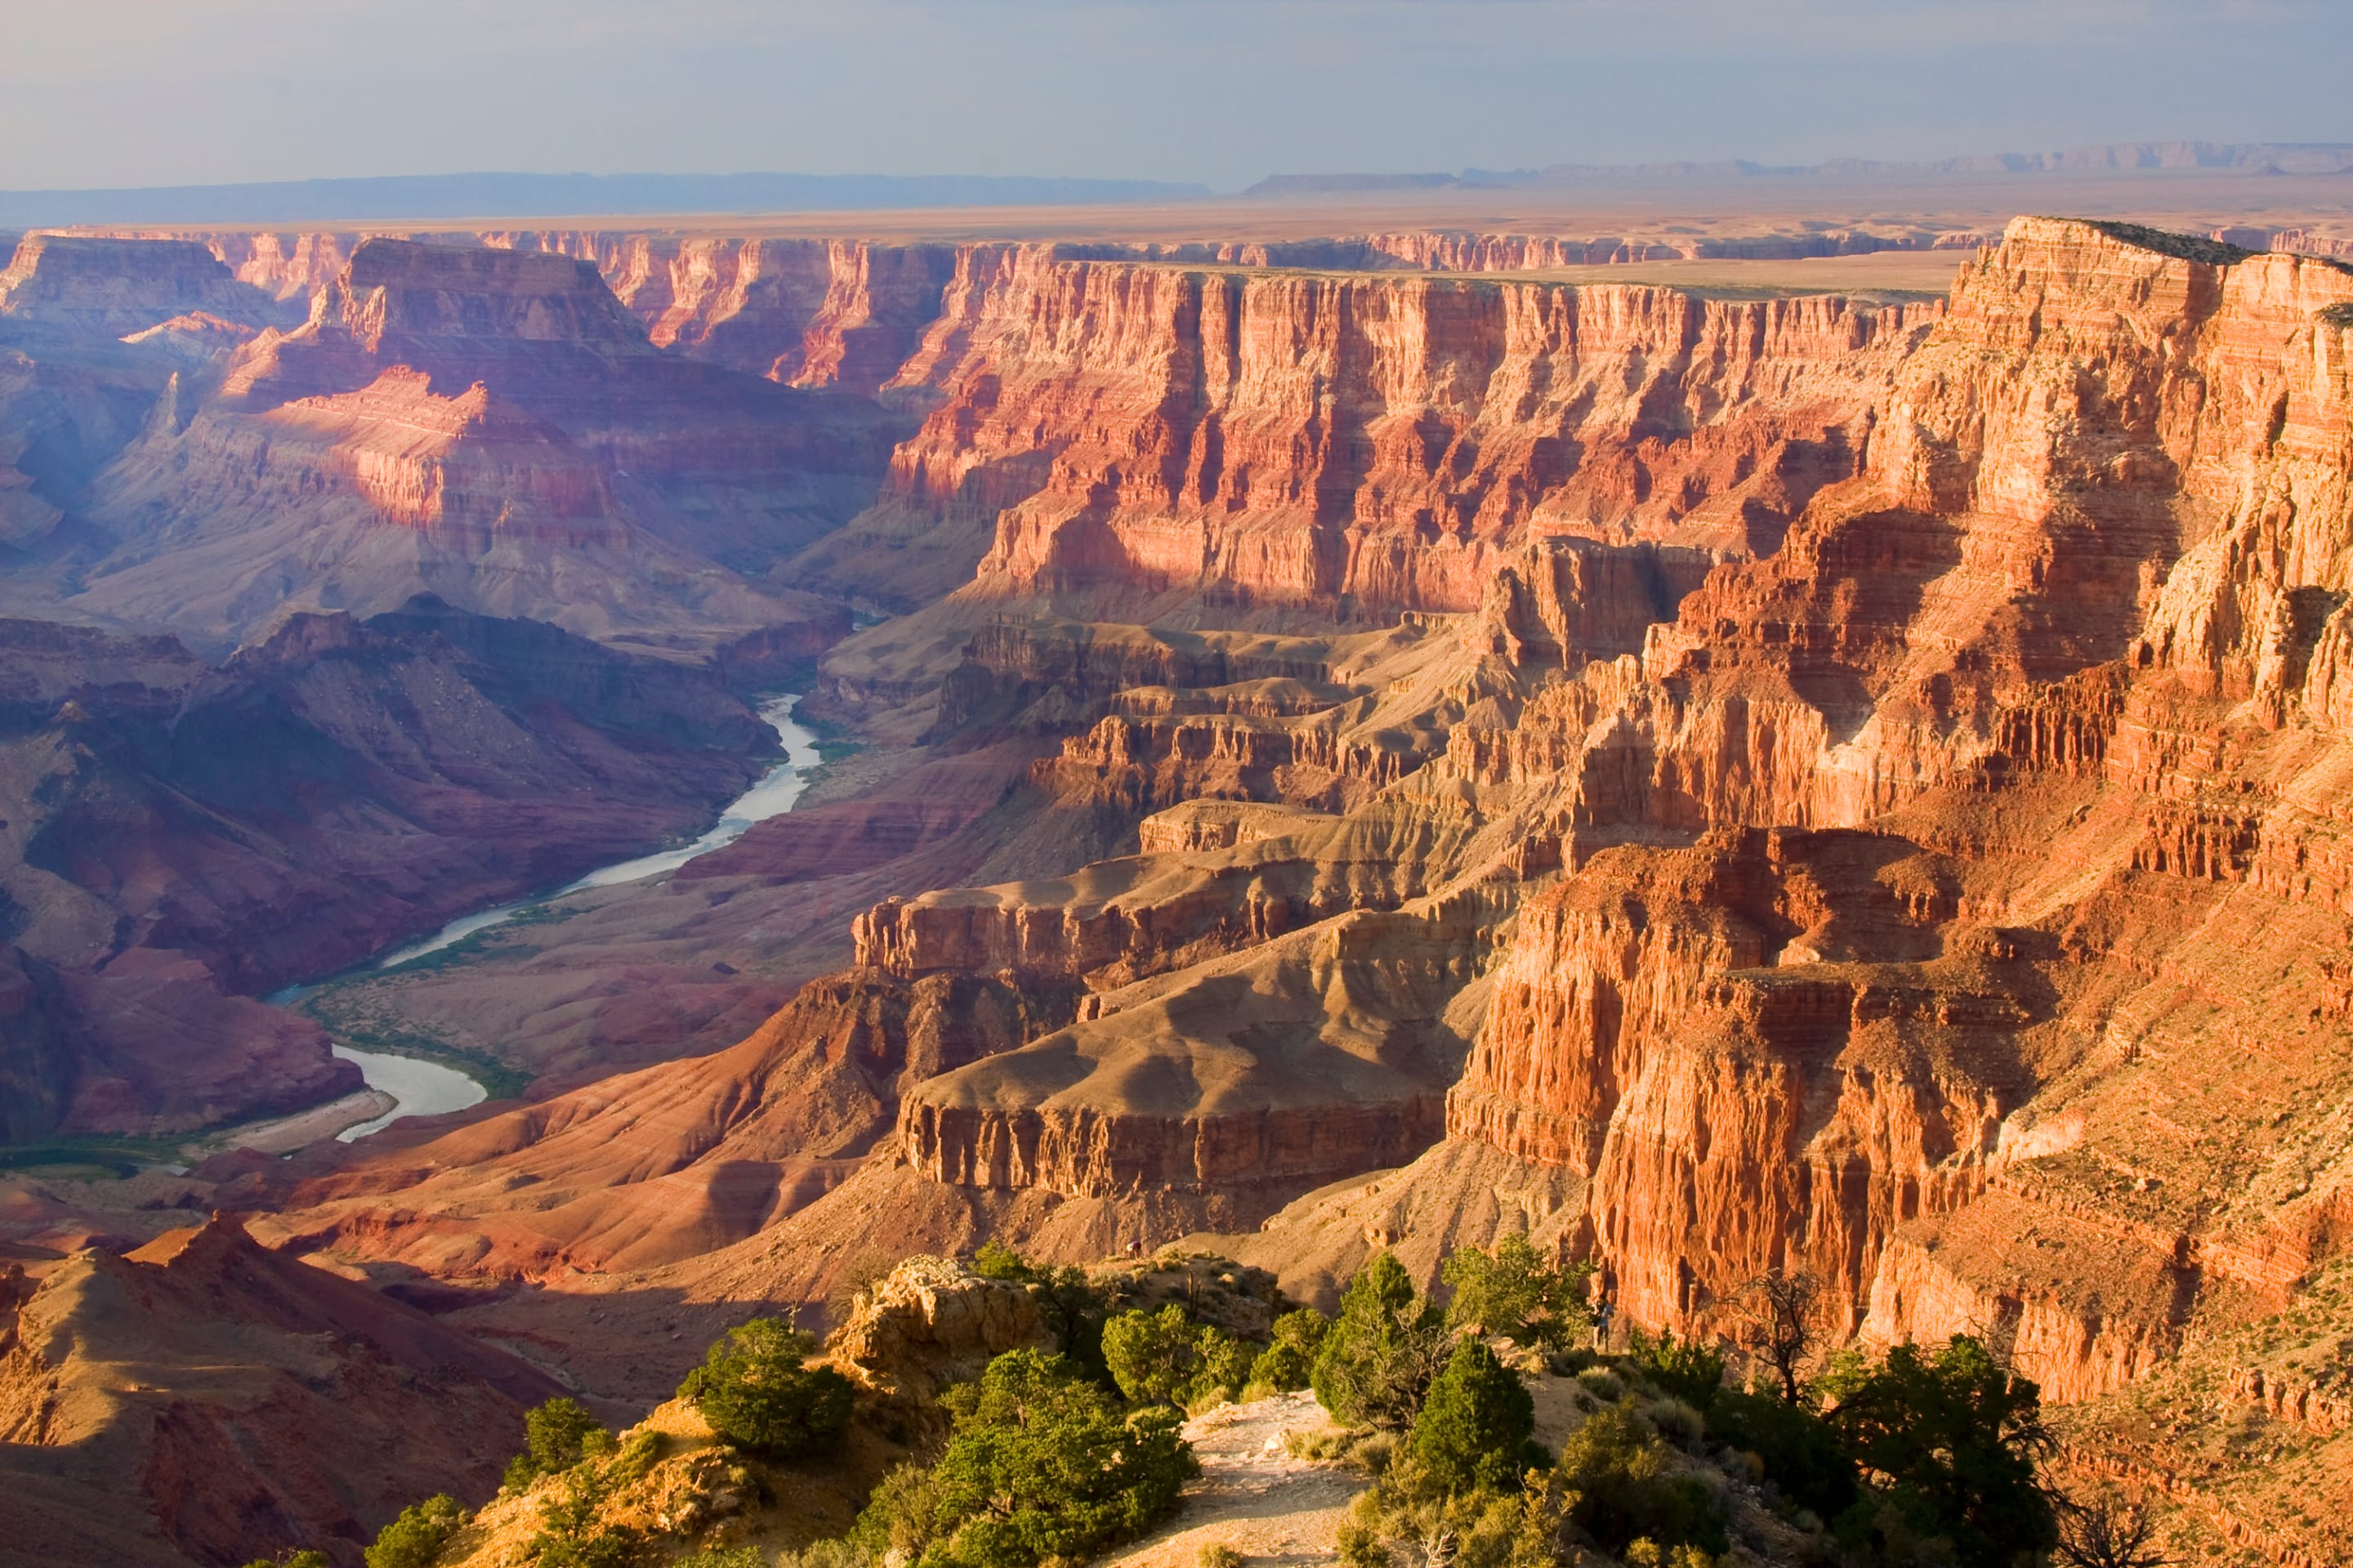 Человек и природа северной америки. Национальный парк Гранд-каньон, Аризона. Каньон реки Колорадо Северная Америка. Grand-Canyon - Гранд-каньон (большой каньон). Национальный парк Гранд каньон в Северной Америке.